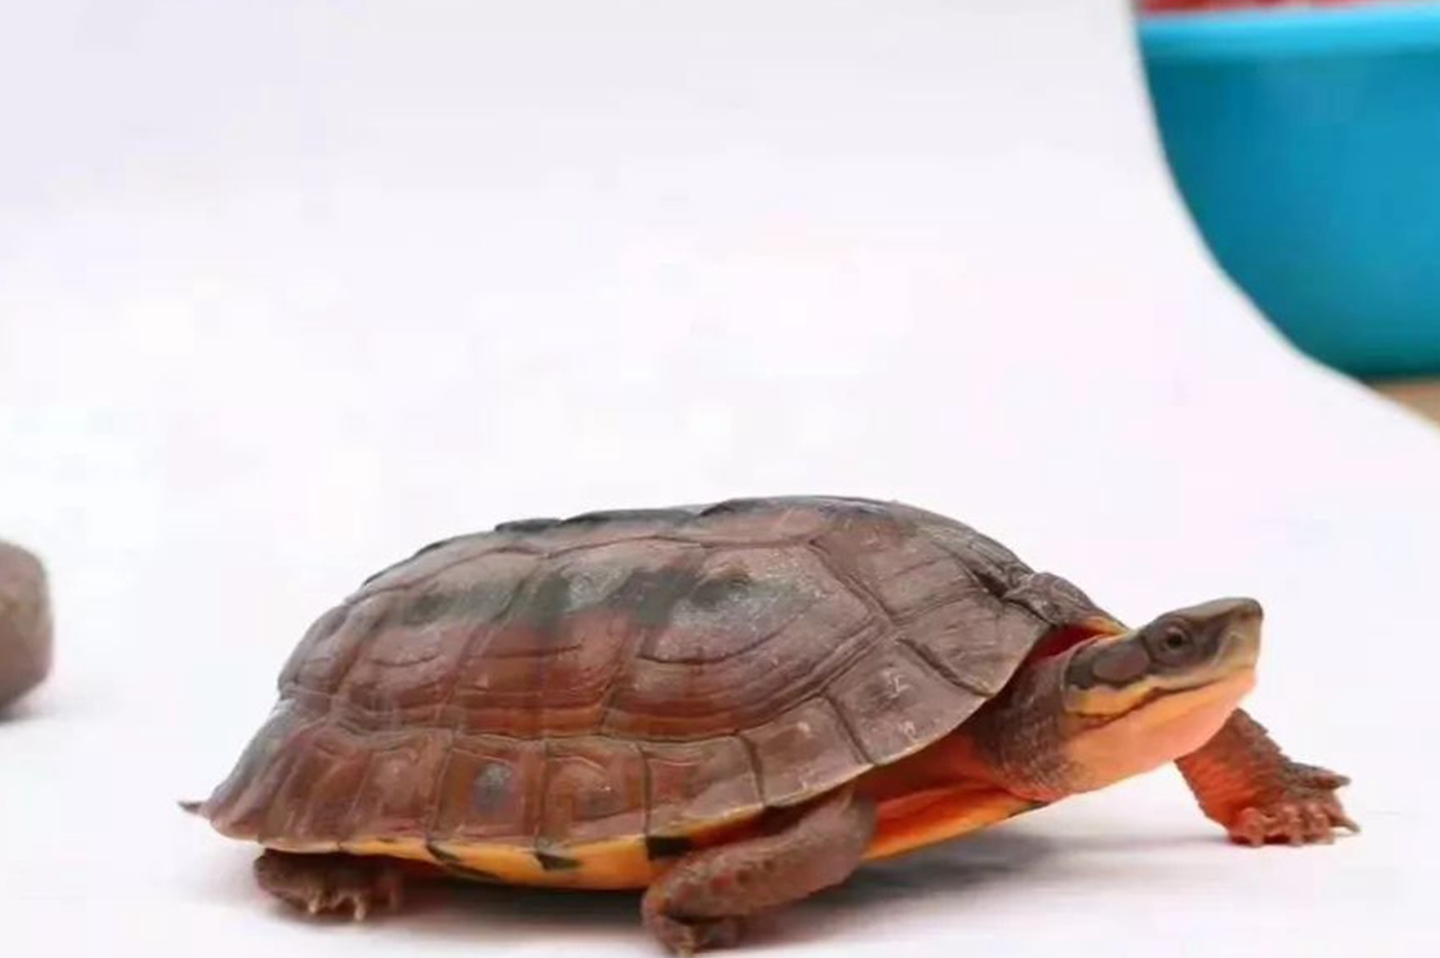 又叫猪鼻龟,适宜生长在水族箱的乌龟,最突出的特点就是它的鼻子,真的